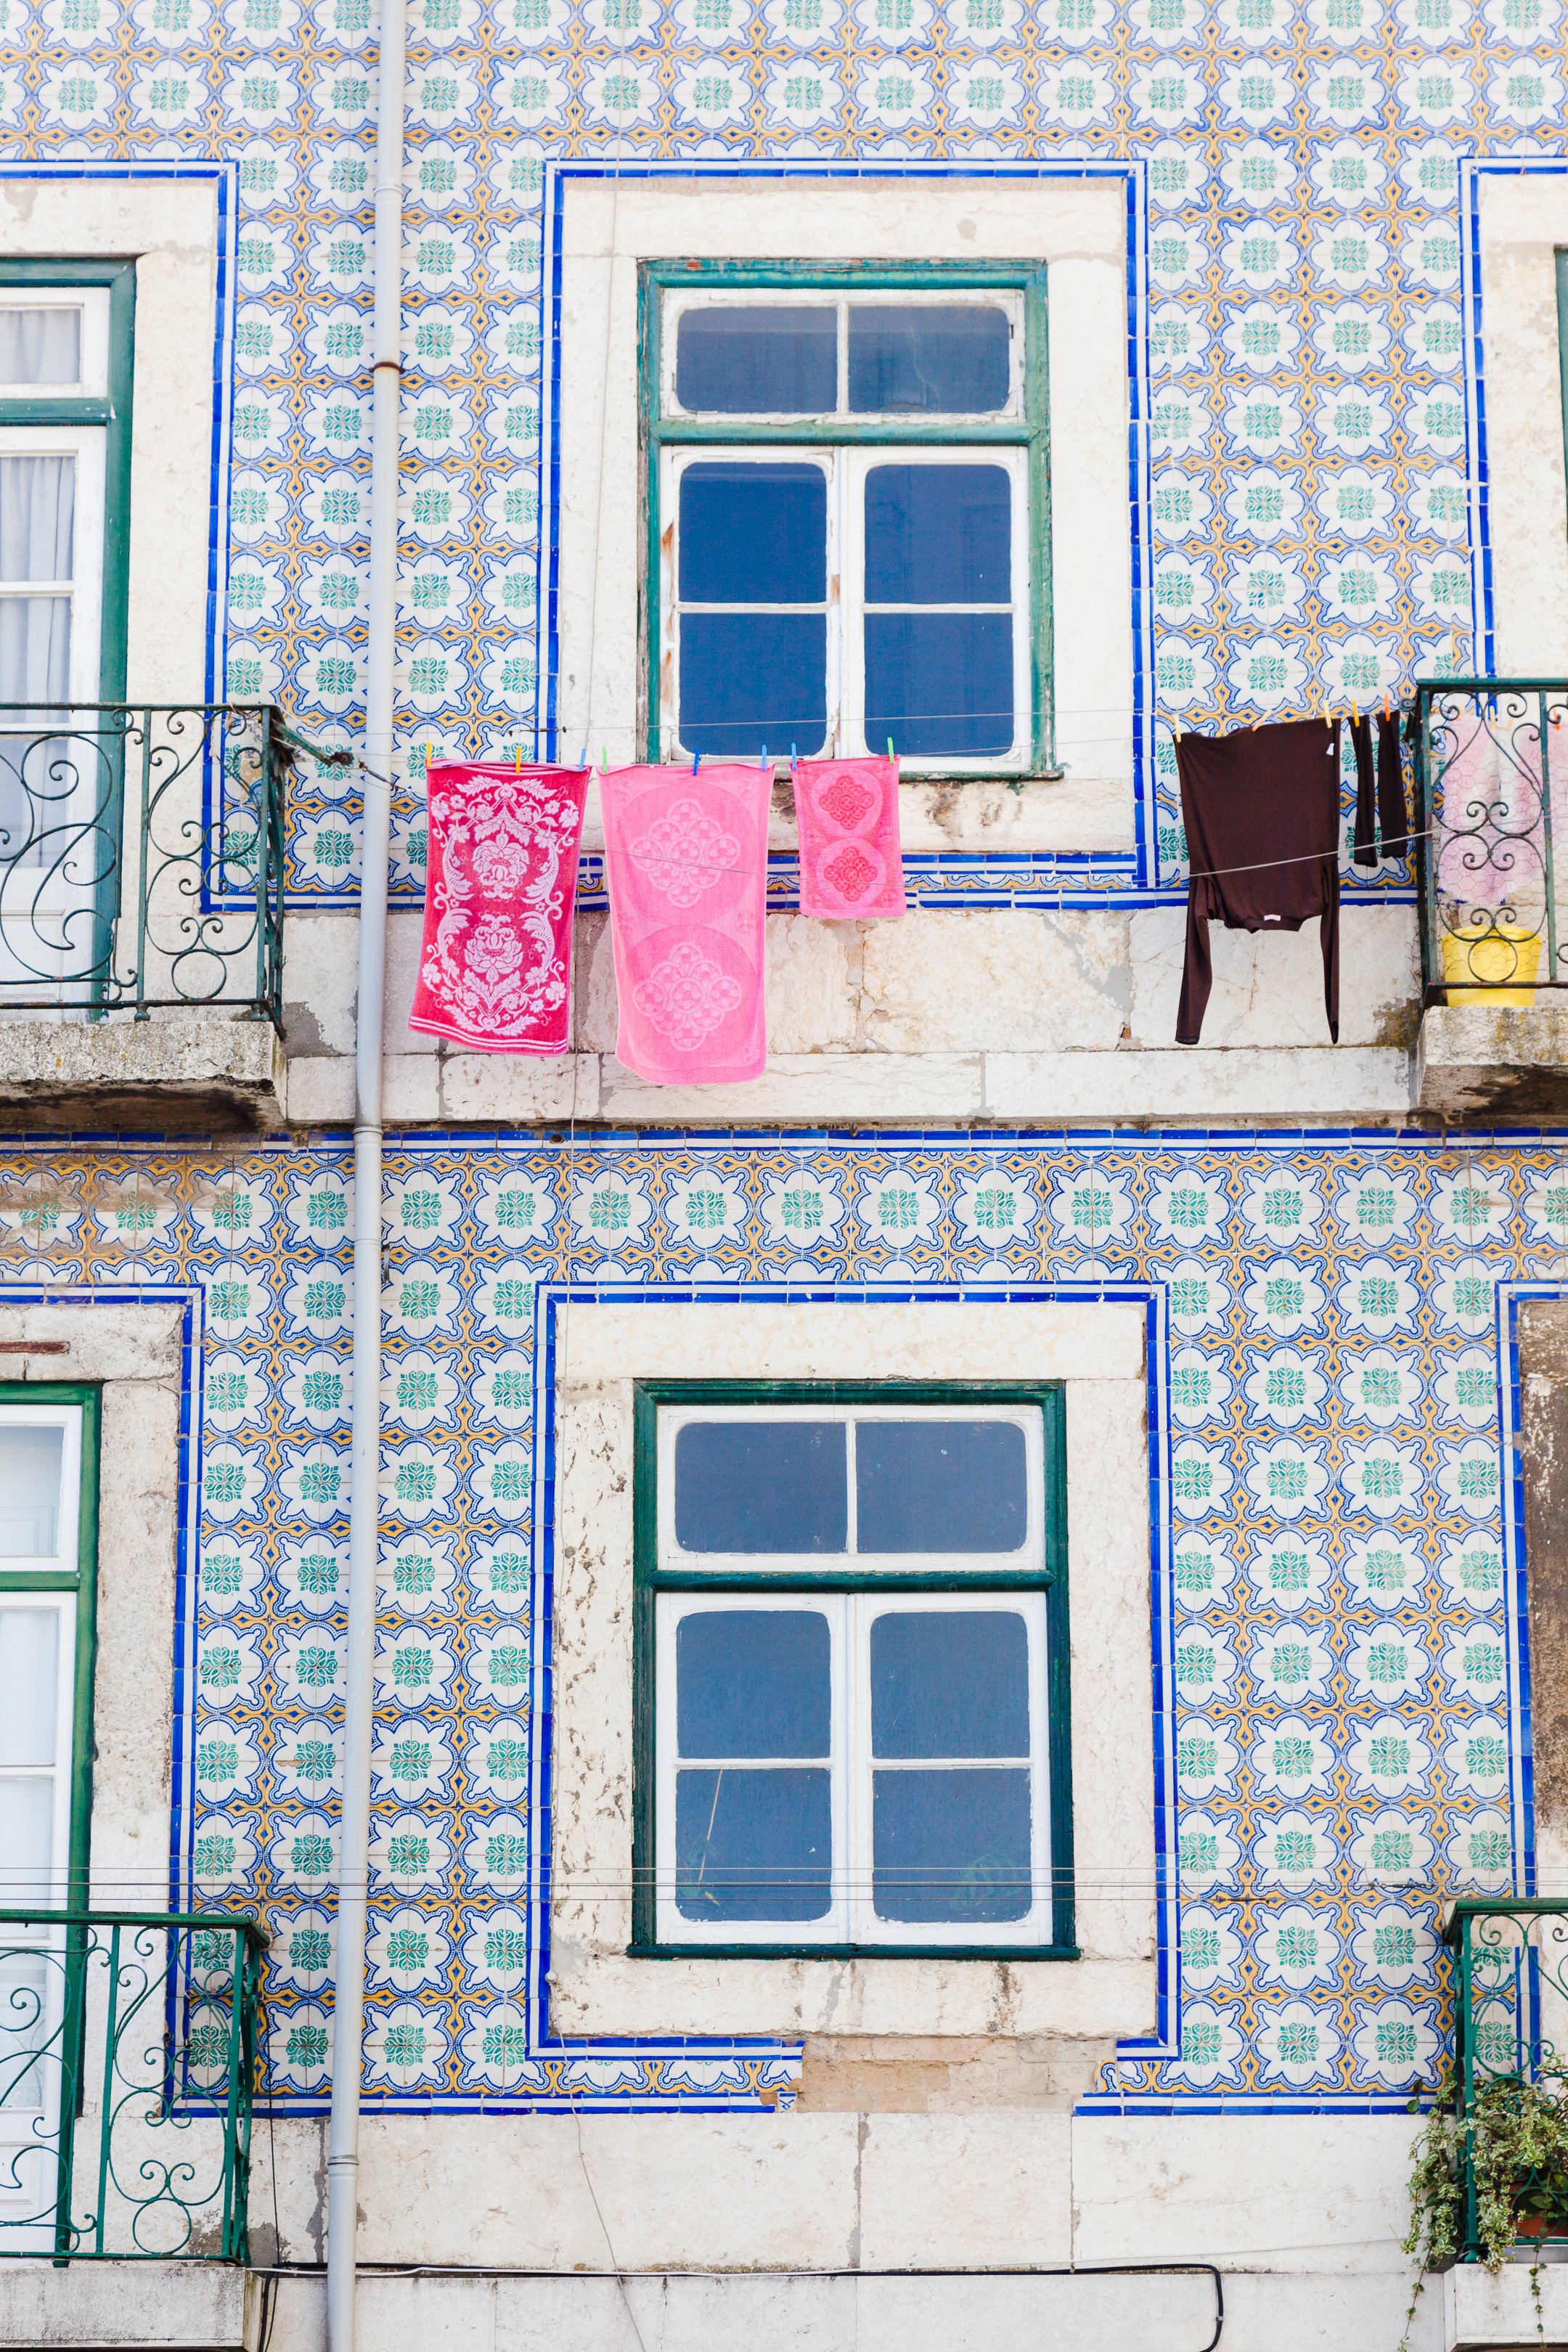  Pattern battle, Lisbon, Portugal 2014 © Laura Elo 